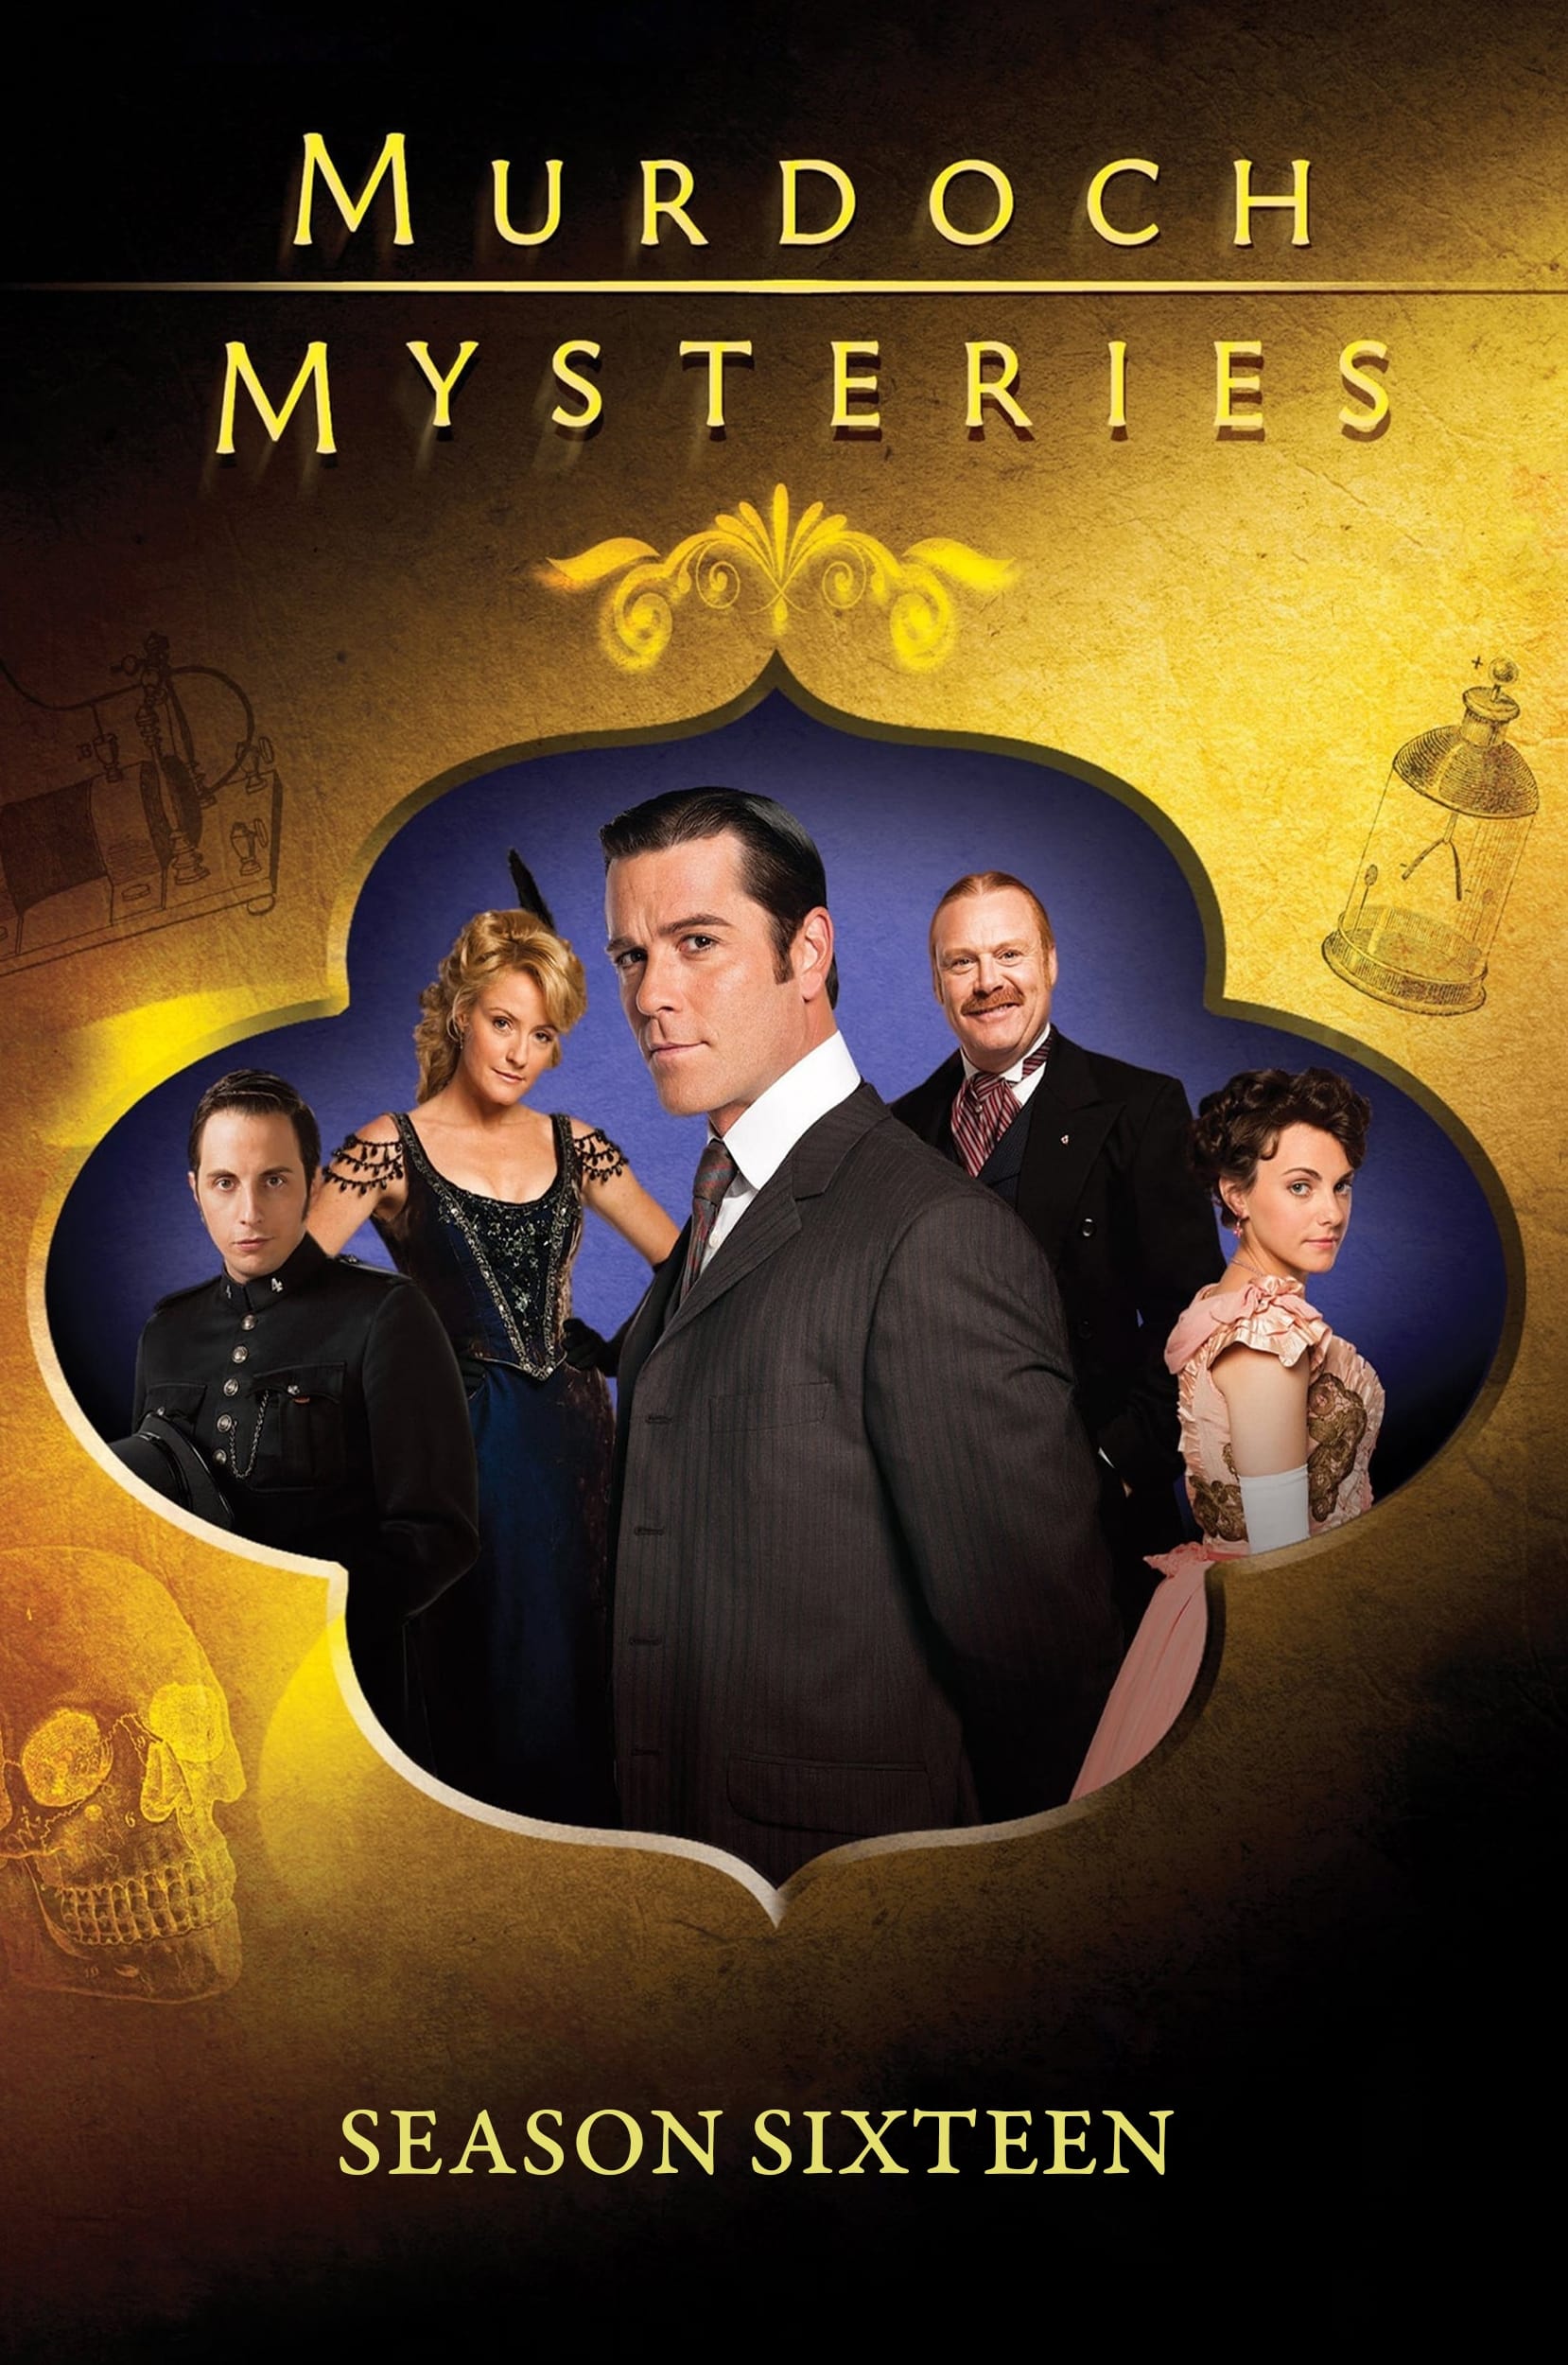 Murdoch Mysteries (2008) S16pt1 E01->E08 NLsubs